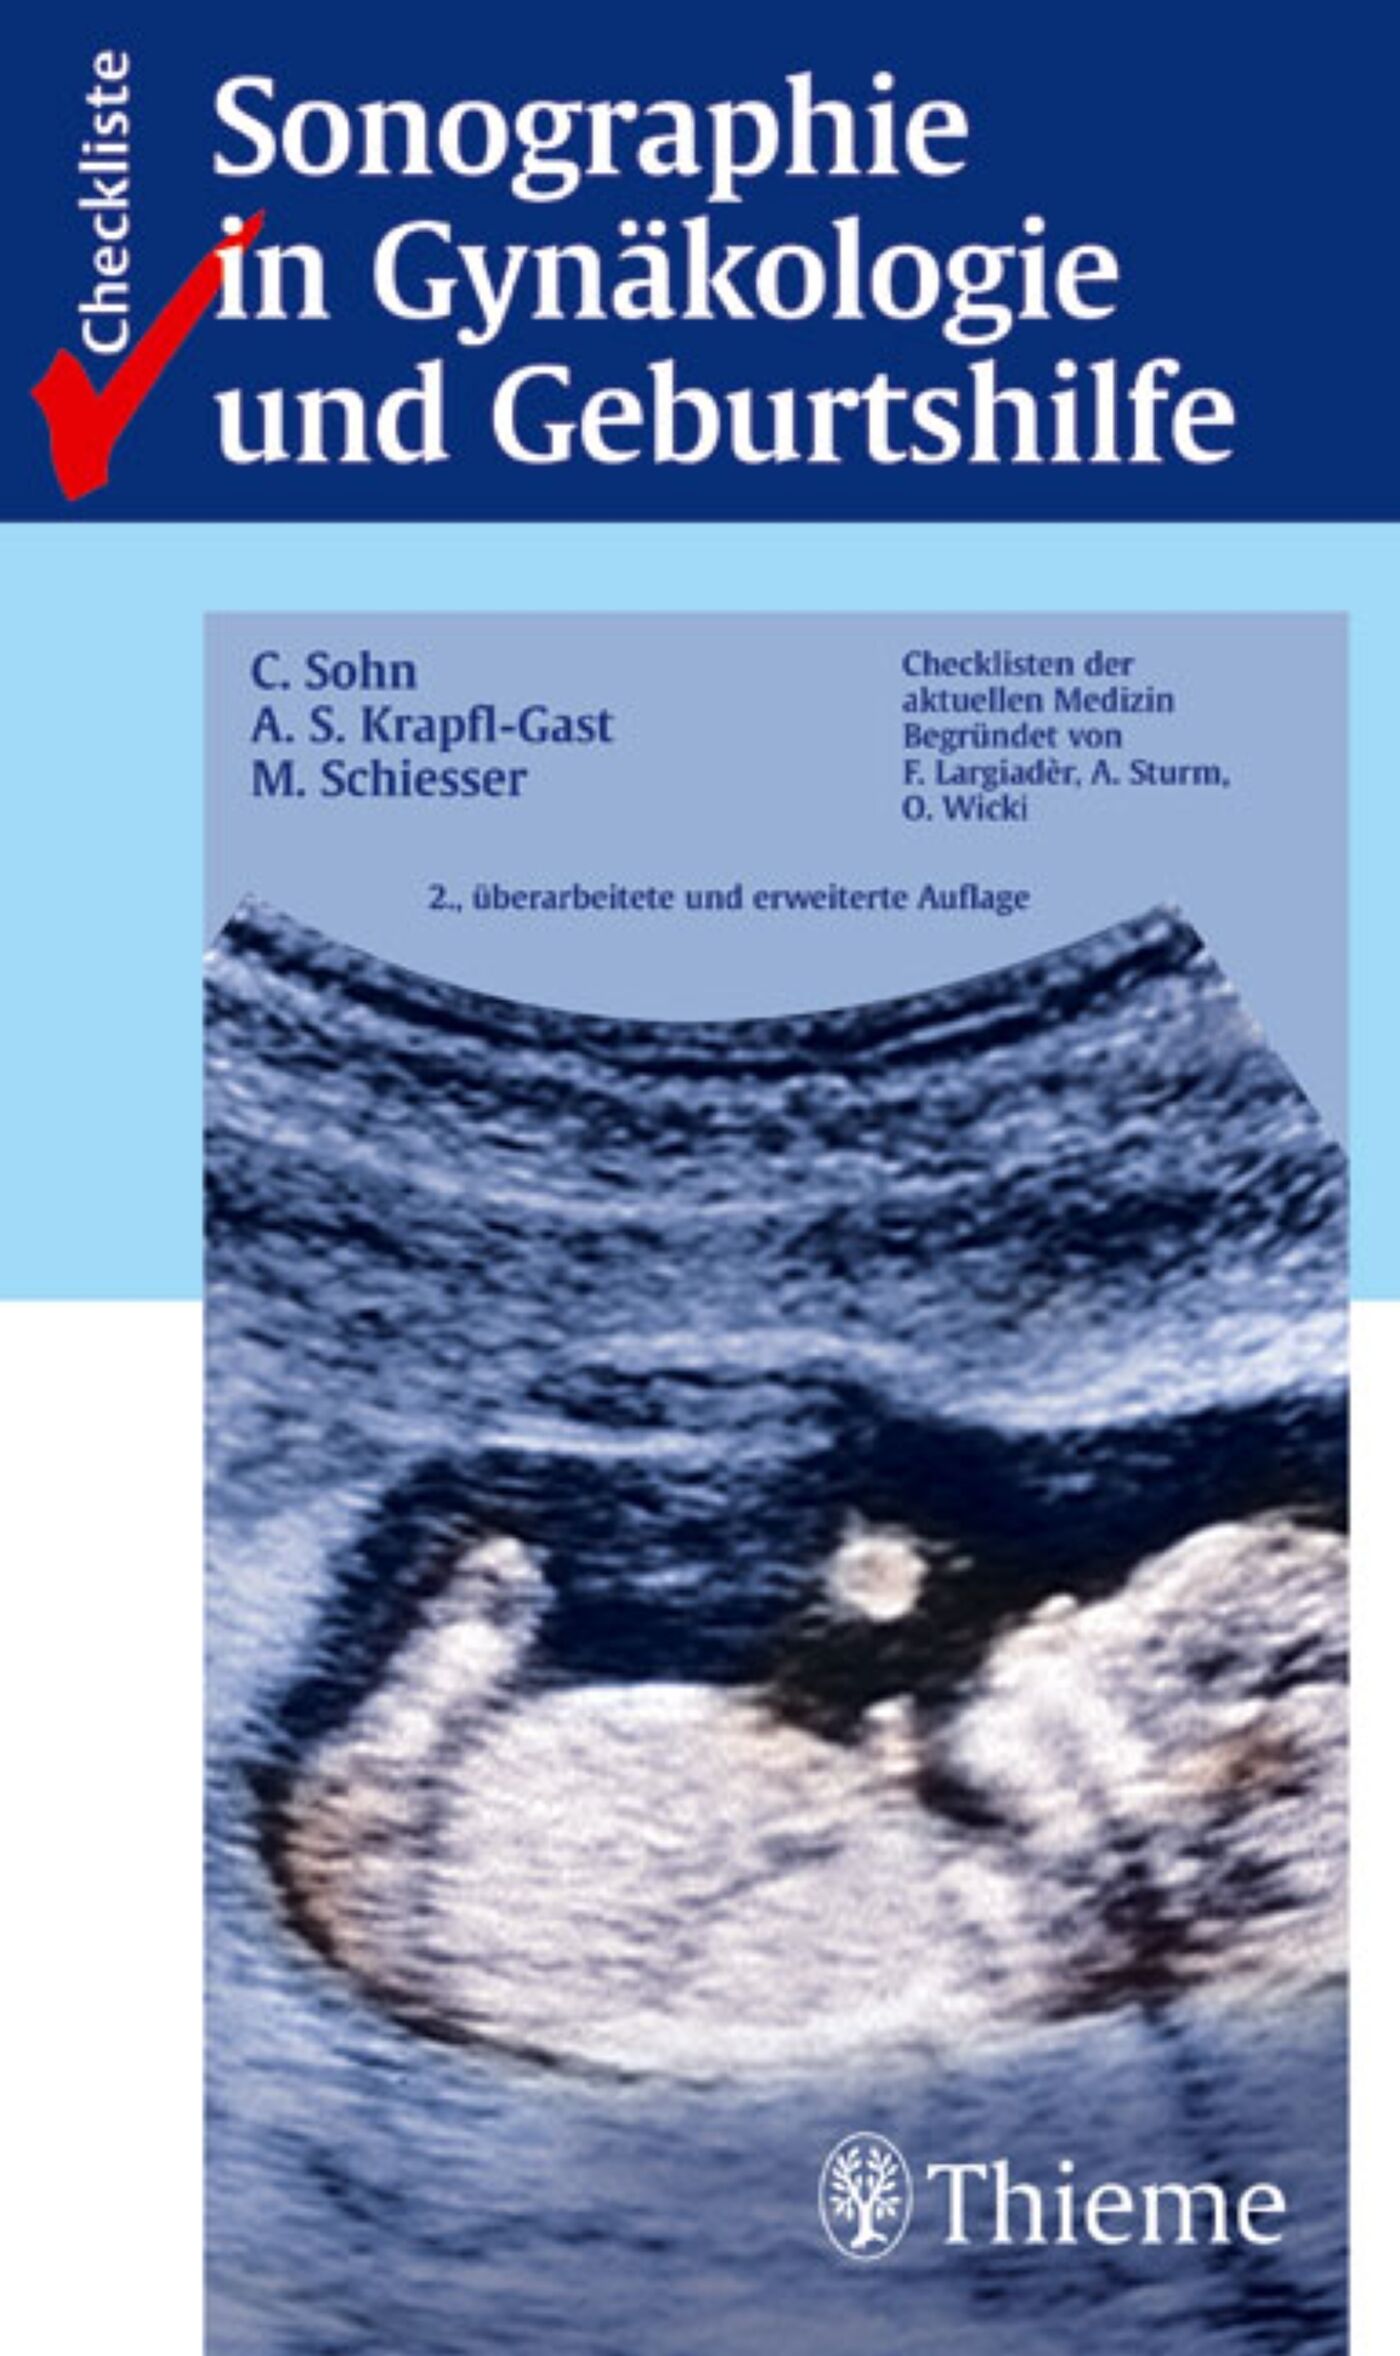 Checkliste Sonographie in Gynäkologie und Geburtshilfe, 9783131525628